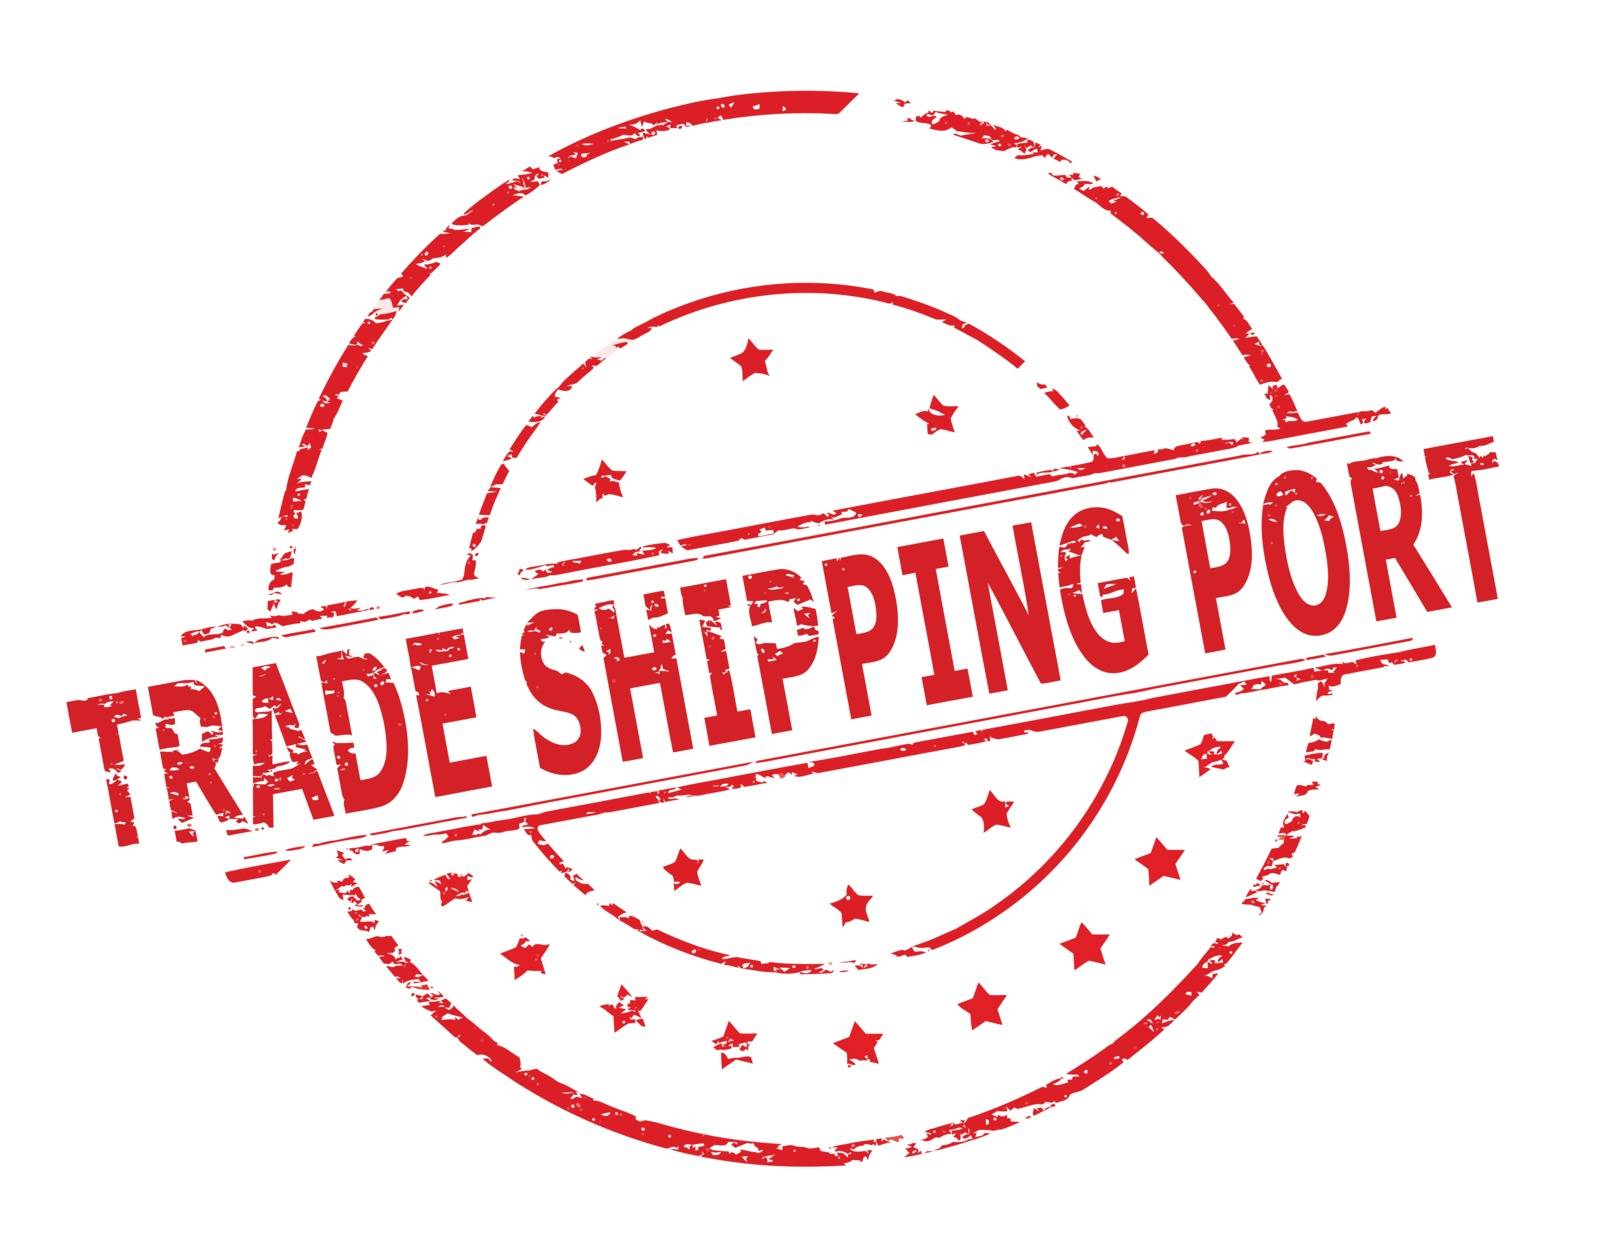 Trade shiping port by carmenbobo